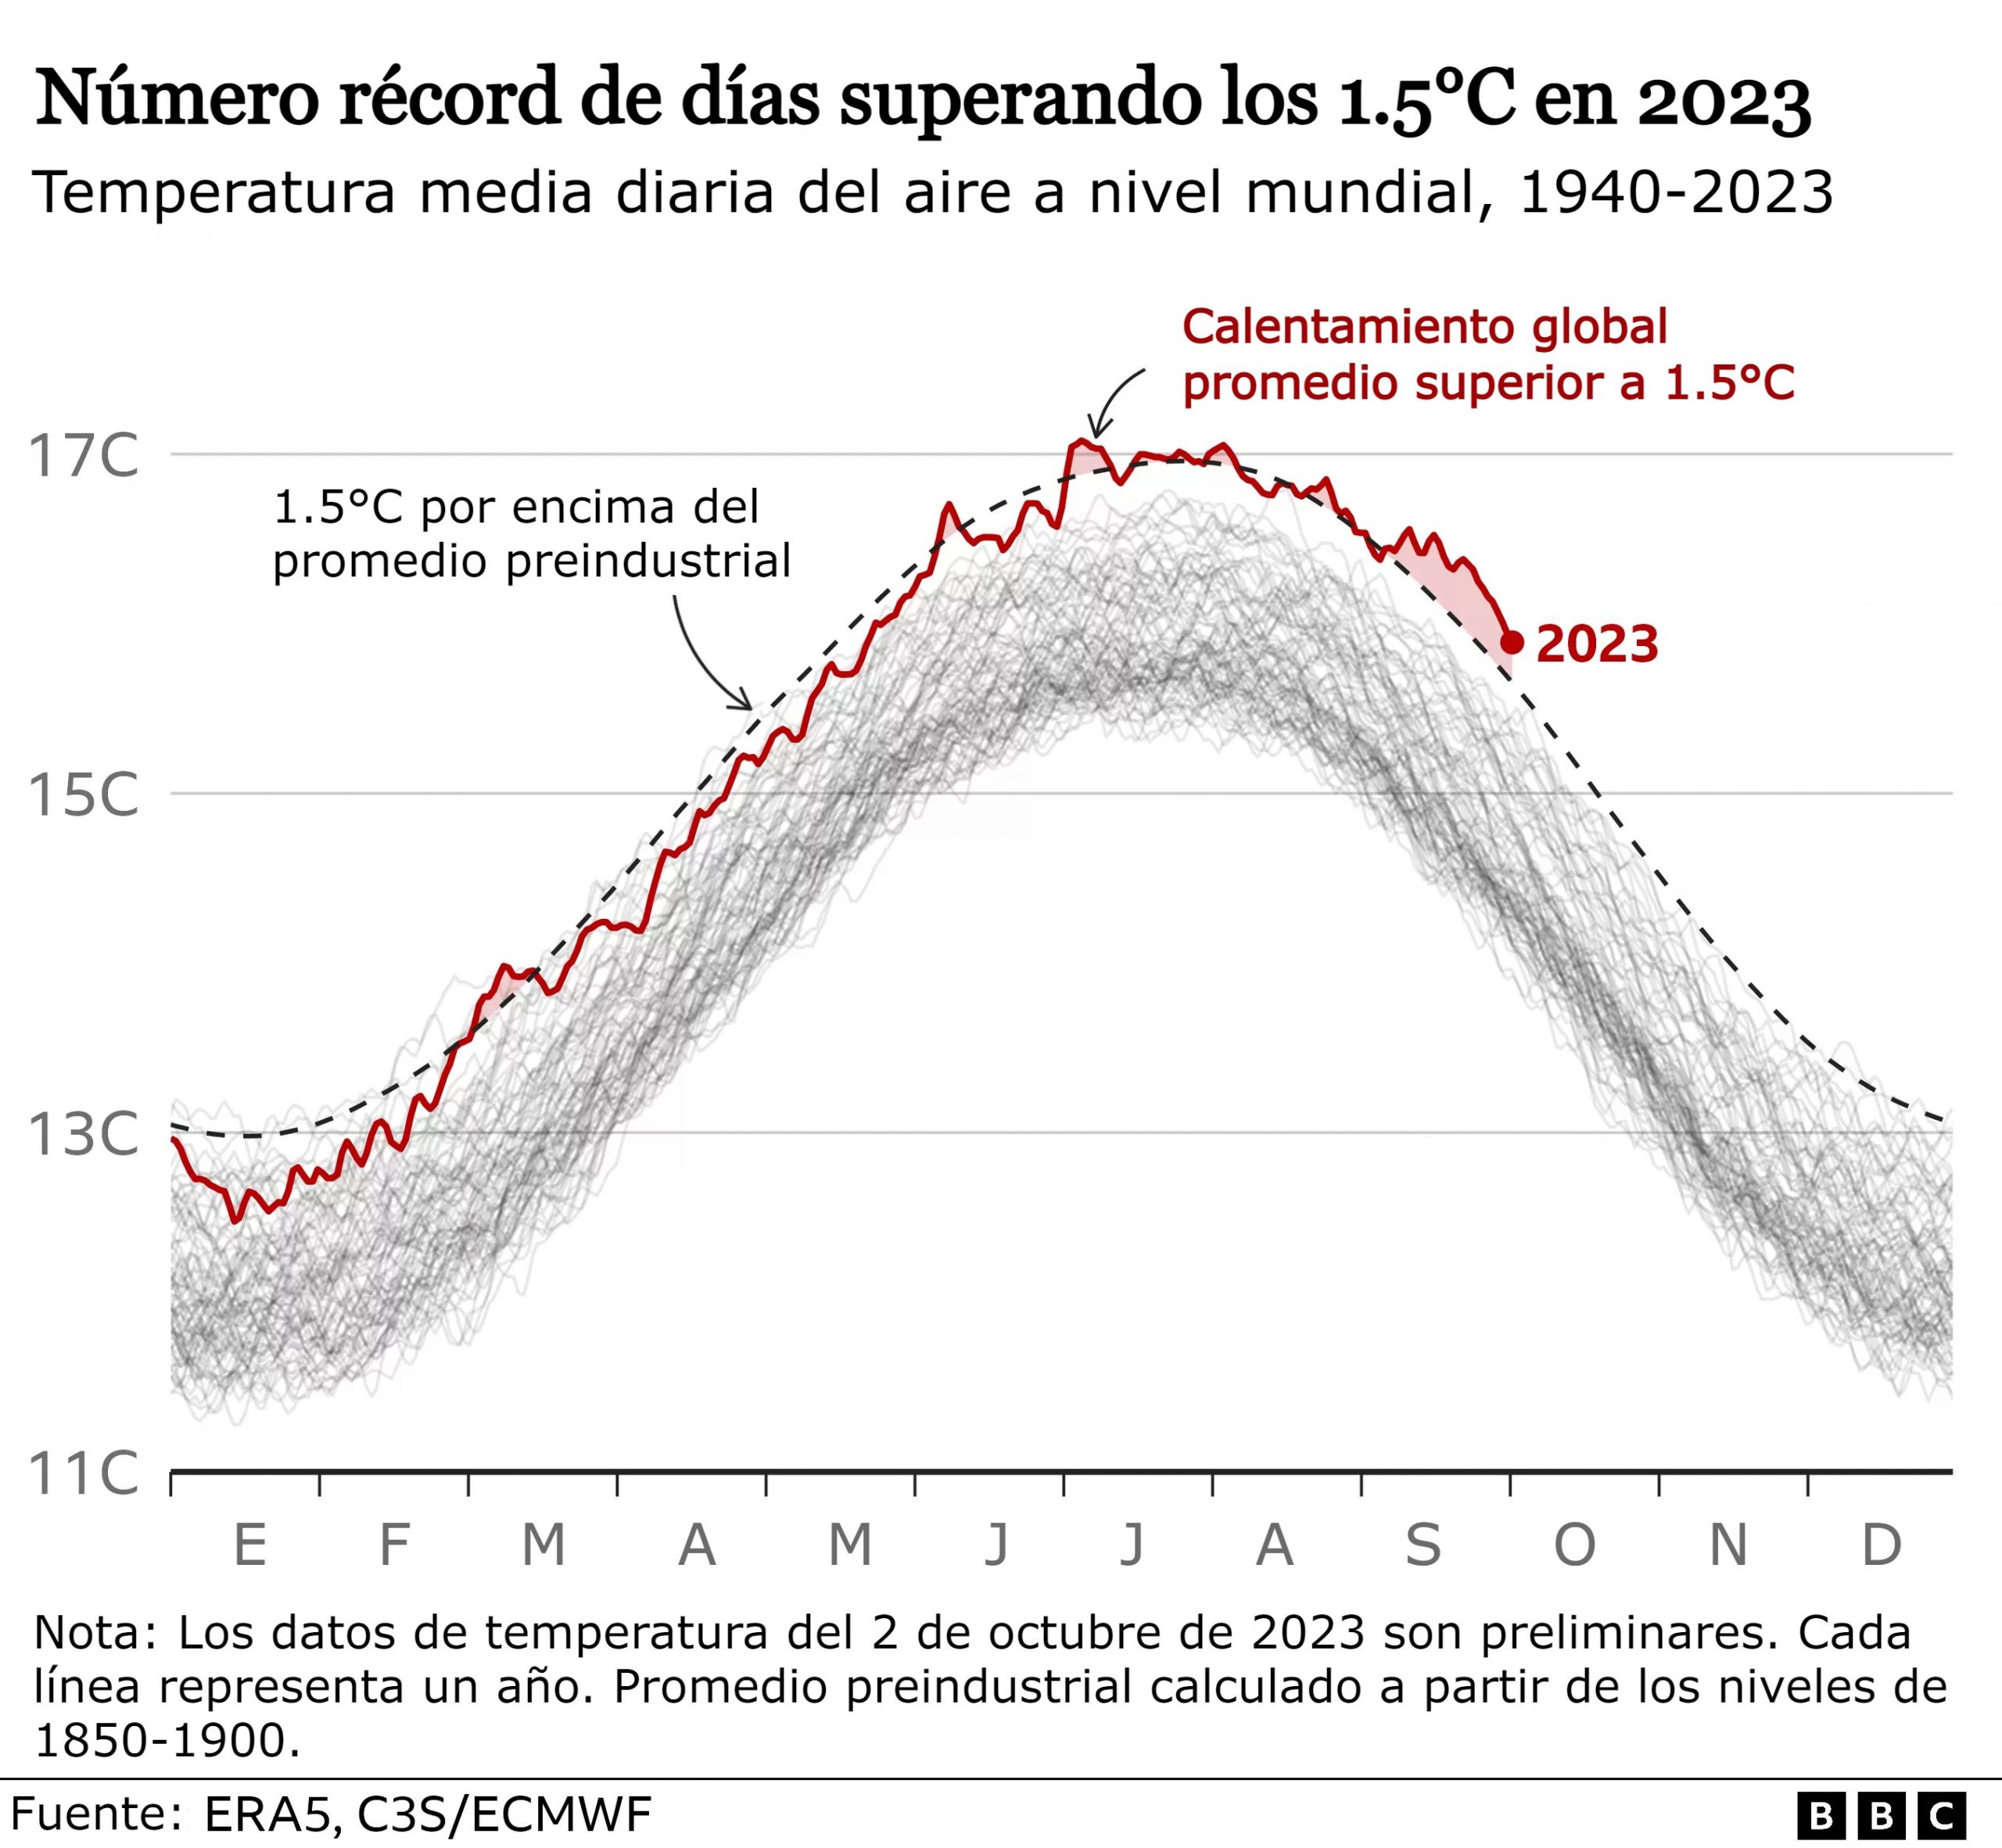 Récord de días que superaron los 1.5°C en 2023 - Fuente BBC